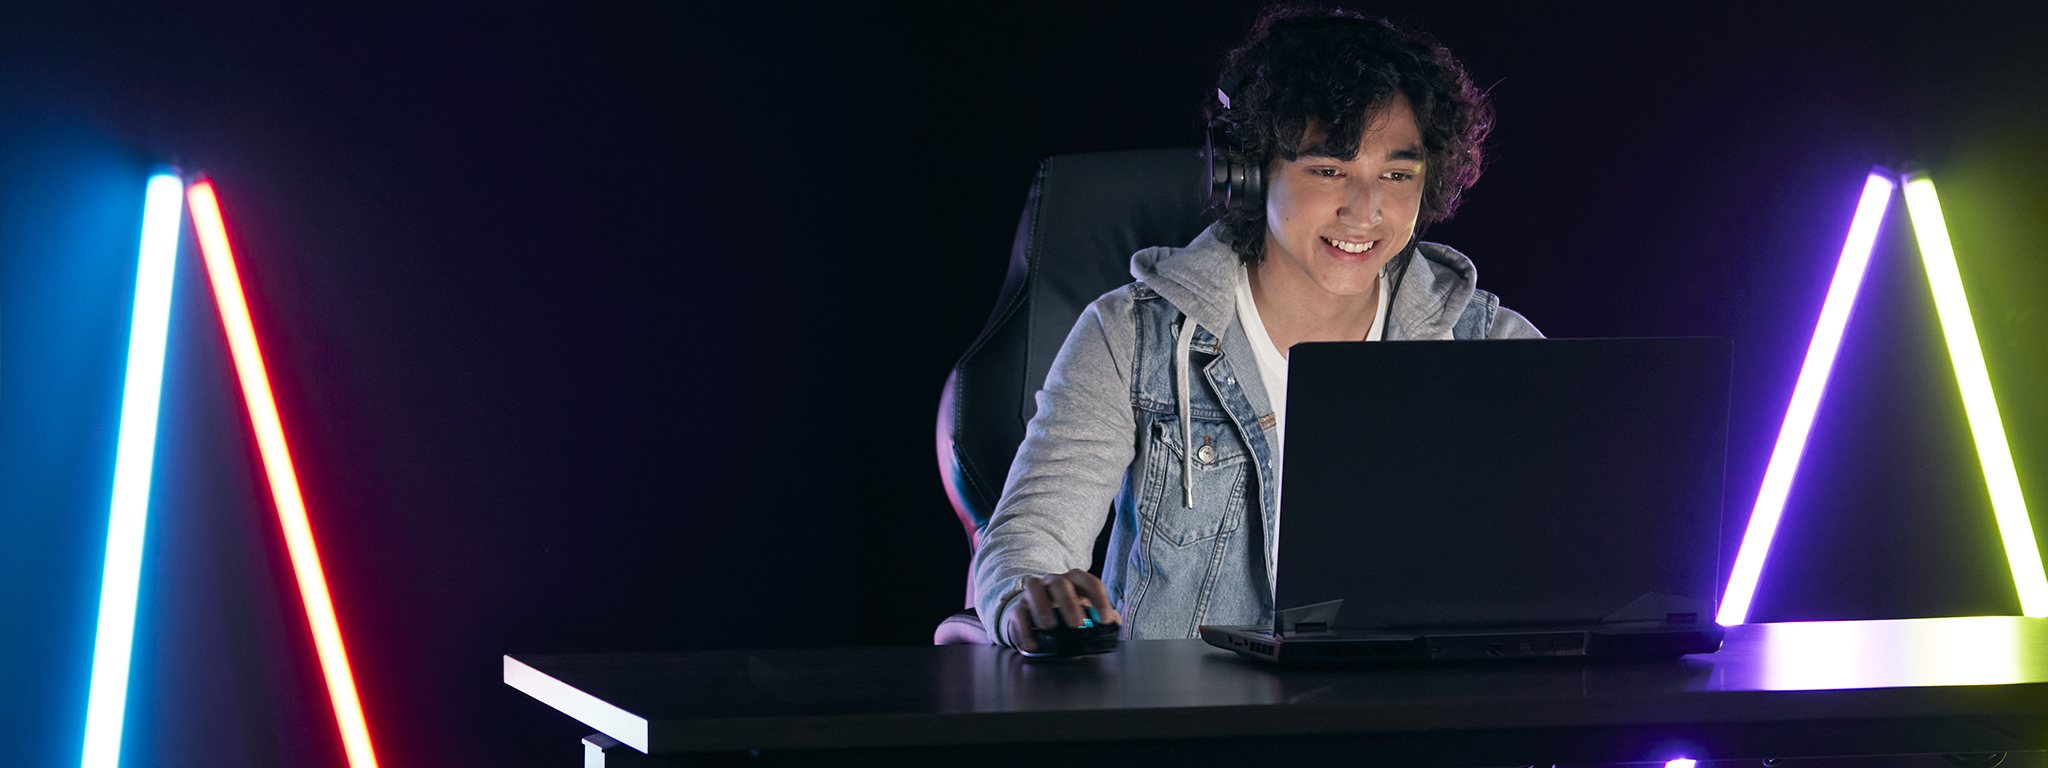 Młody gracz grający na laptopie w ciemnym pokoju